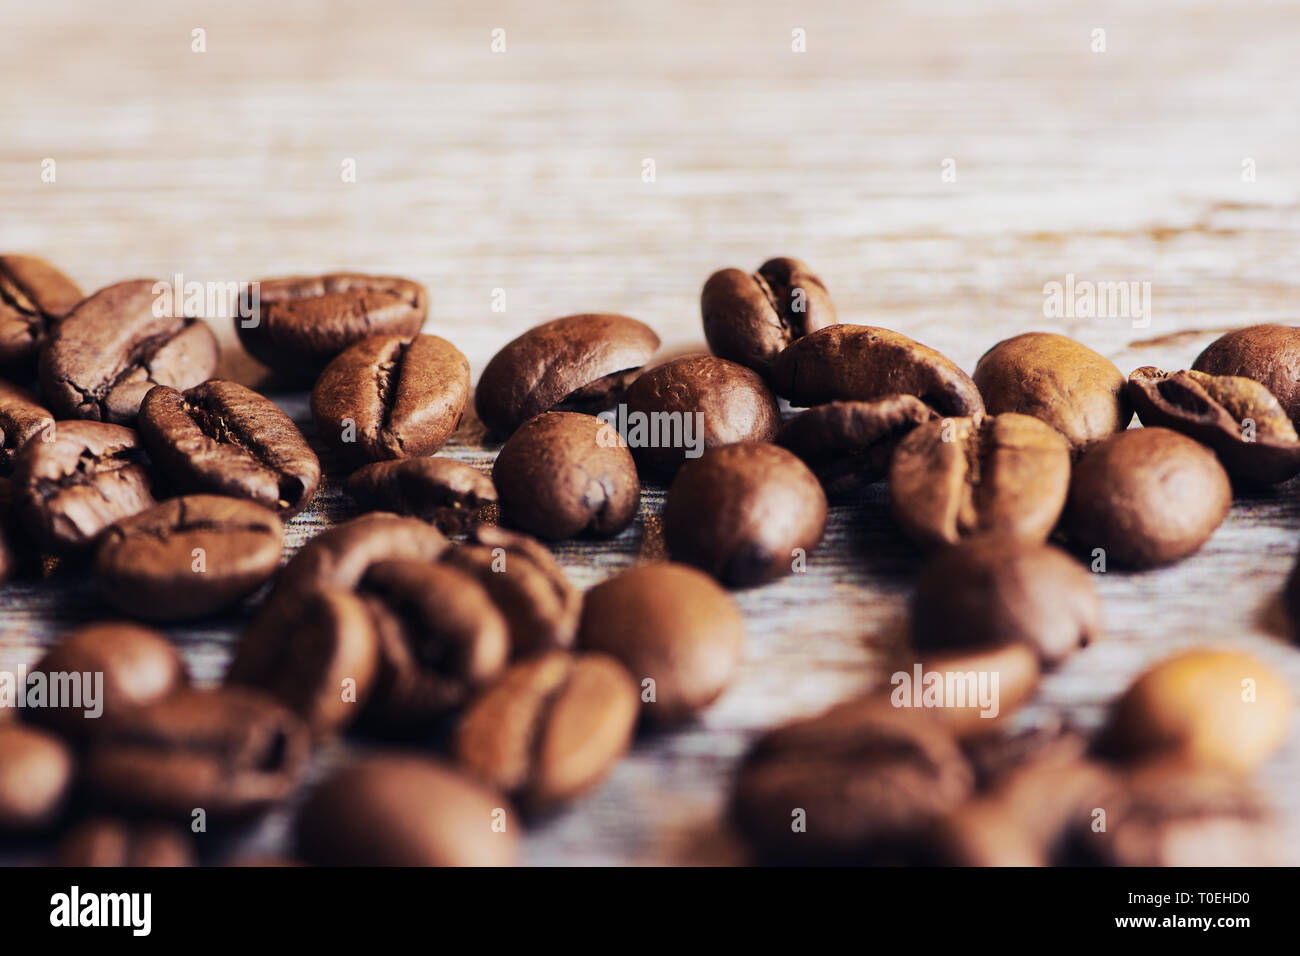 Les grains de café Roasted Brown sur une surface en bois brun, macro photo couleur Banque D'Images